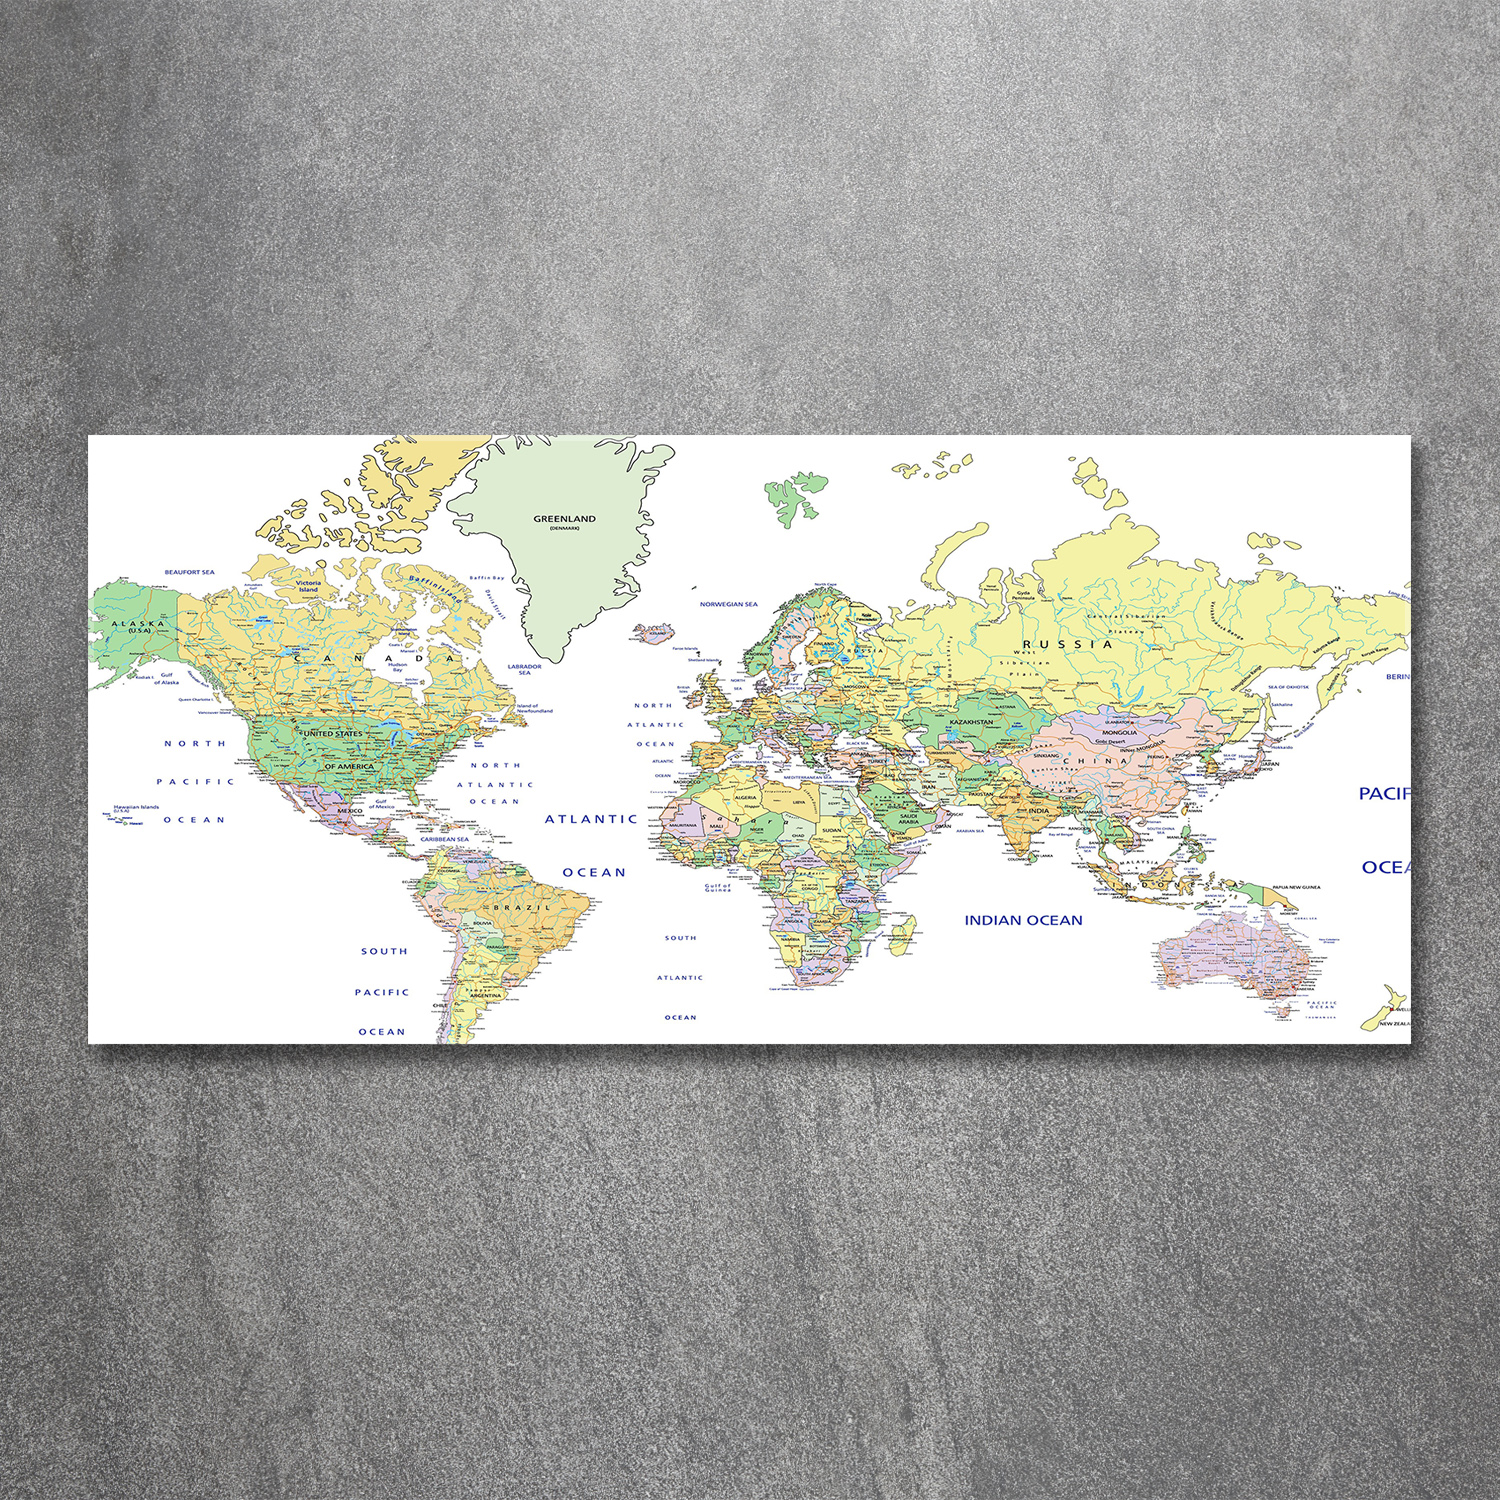 Glas-Bild Wandbilder Druck auf Glas 120x60 Deko Landkarten & Flaggen Weltkarte